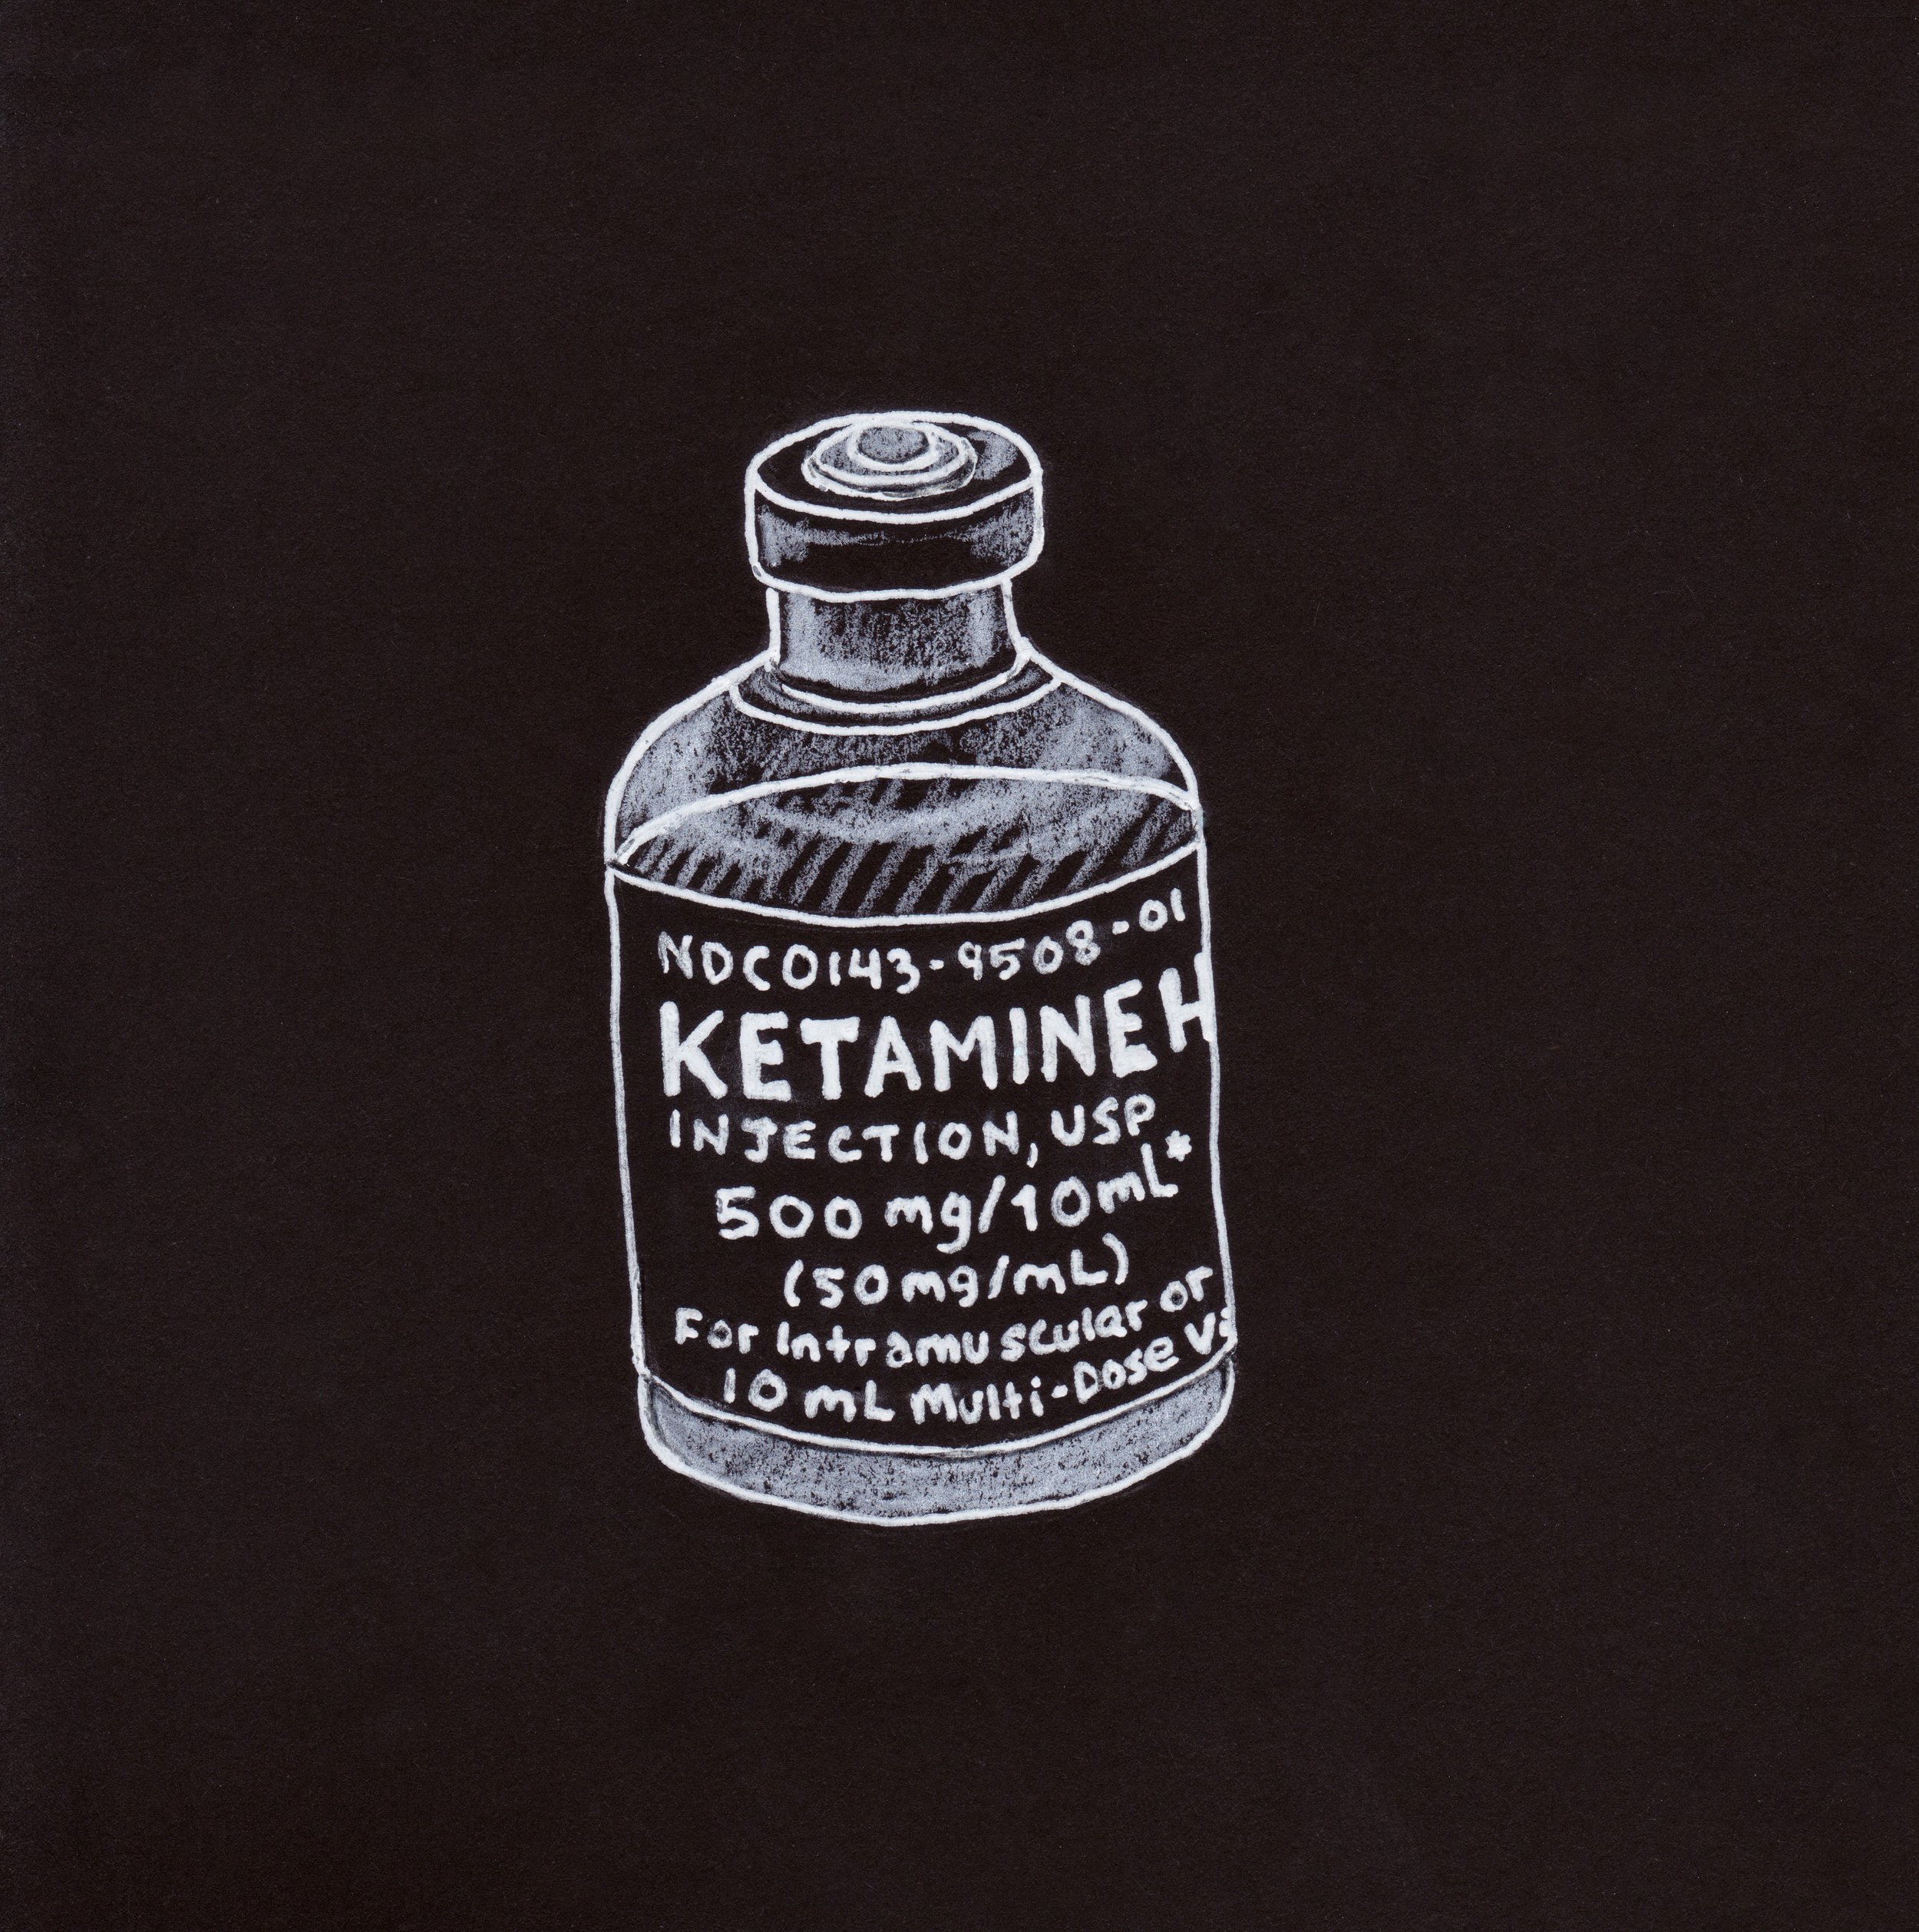 "K is for Ketamine"